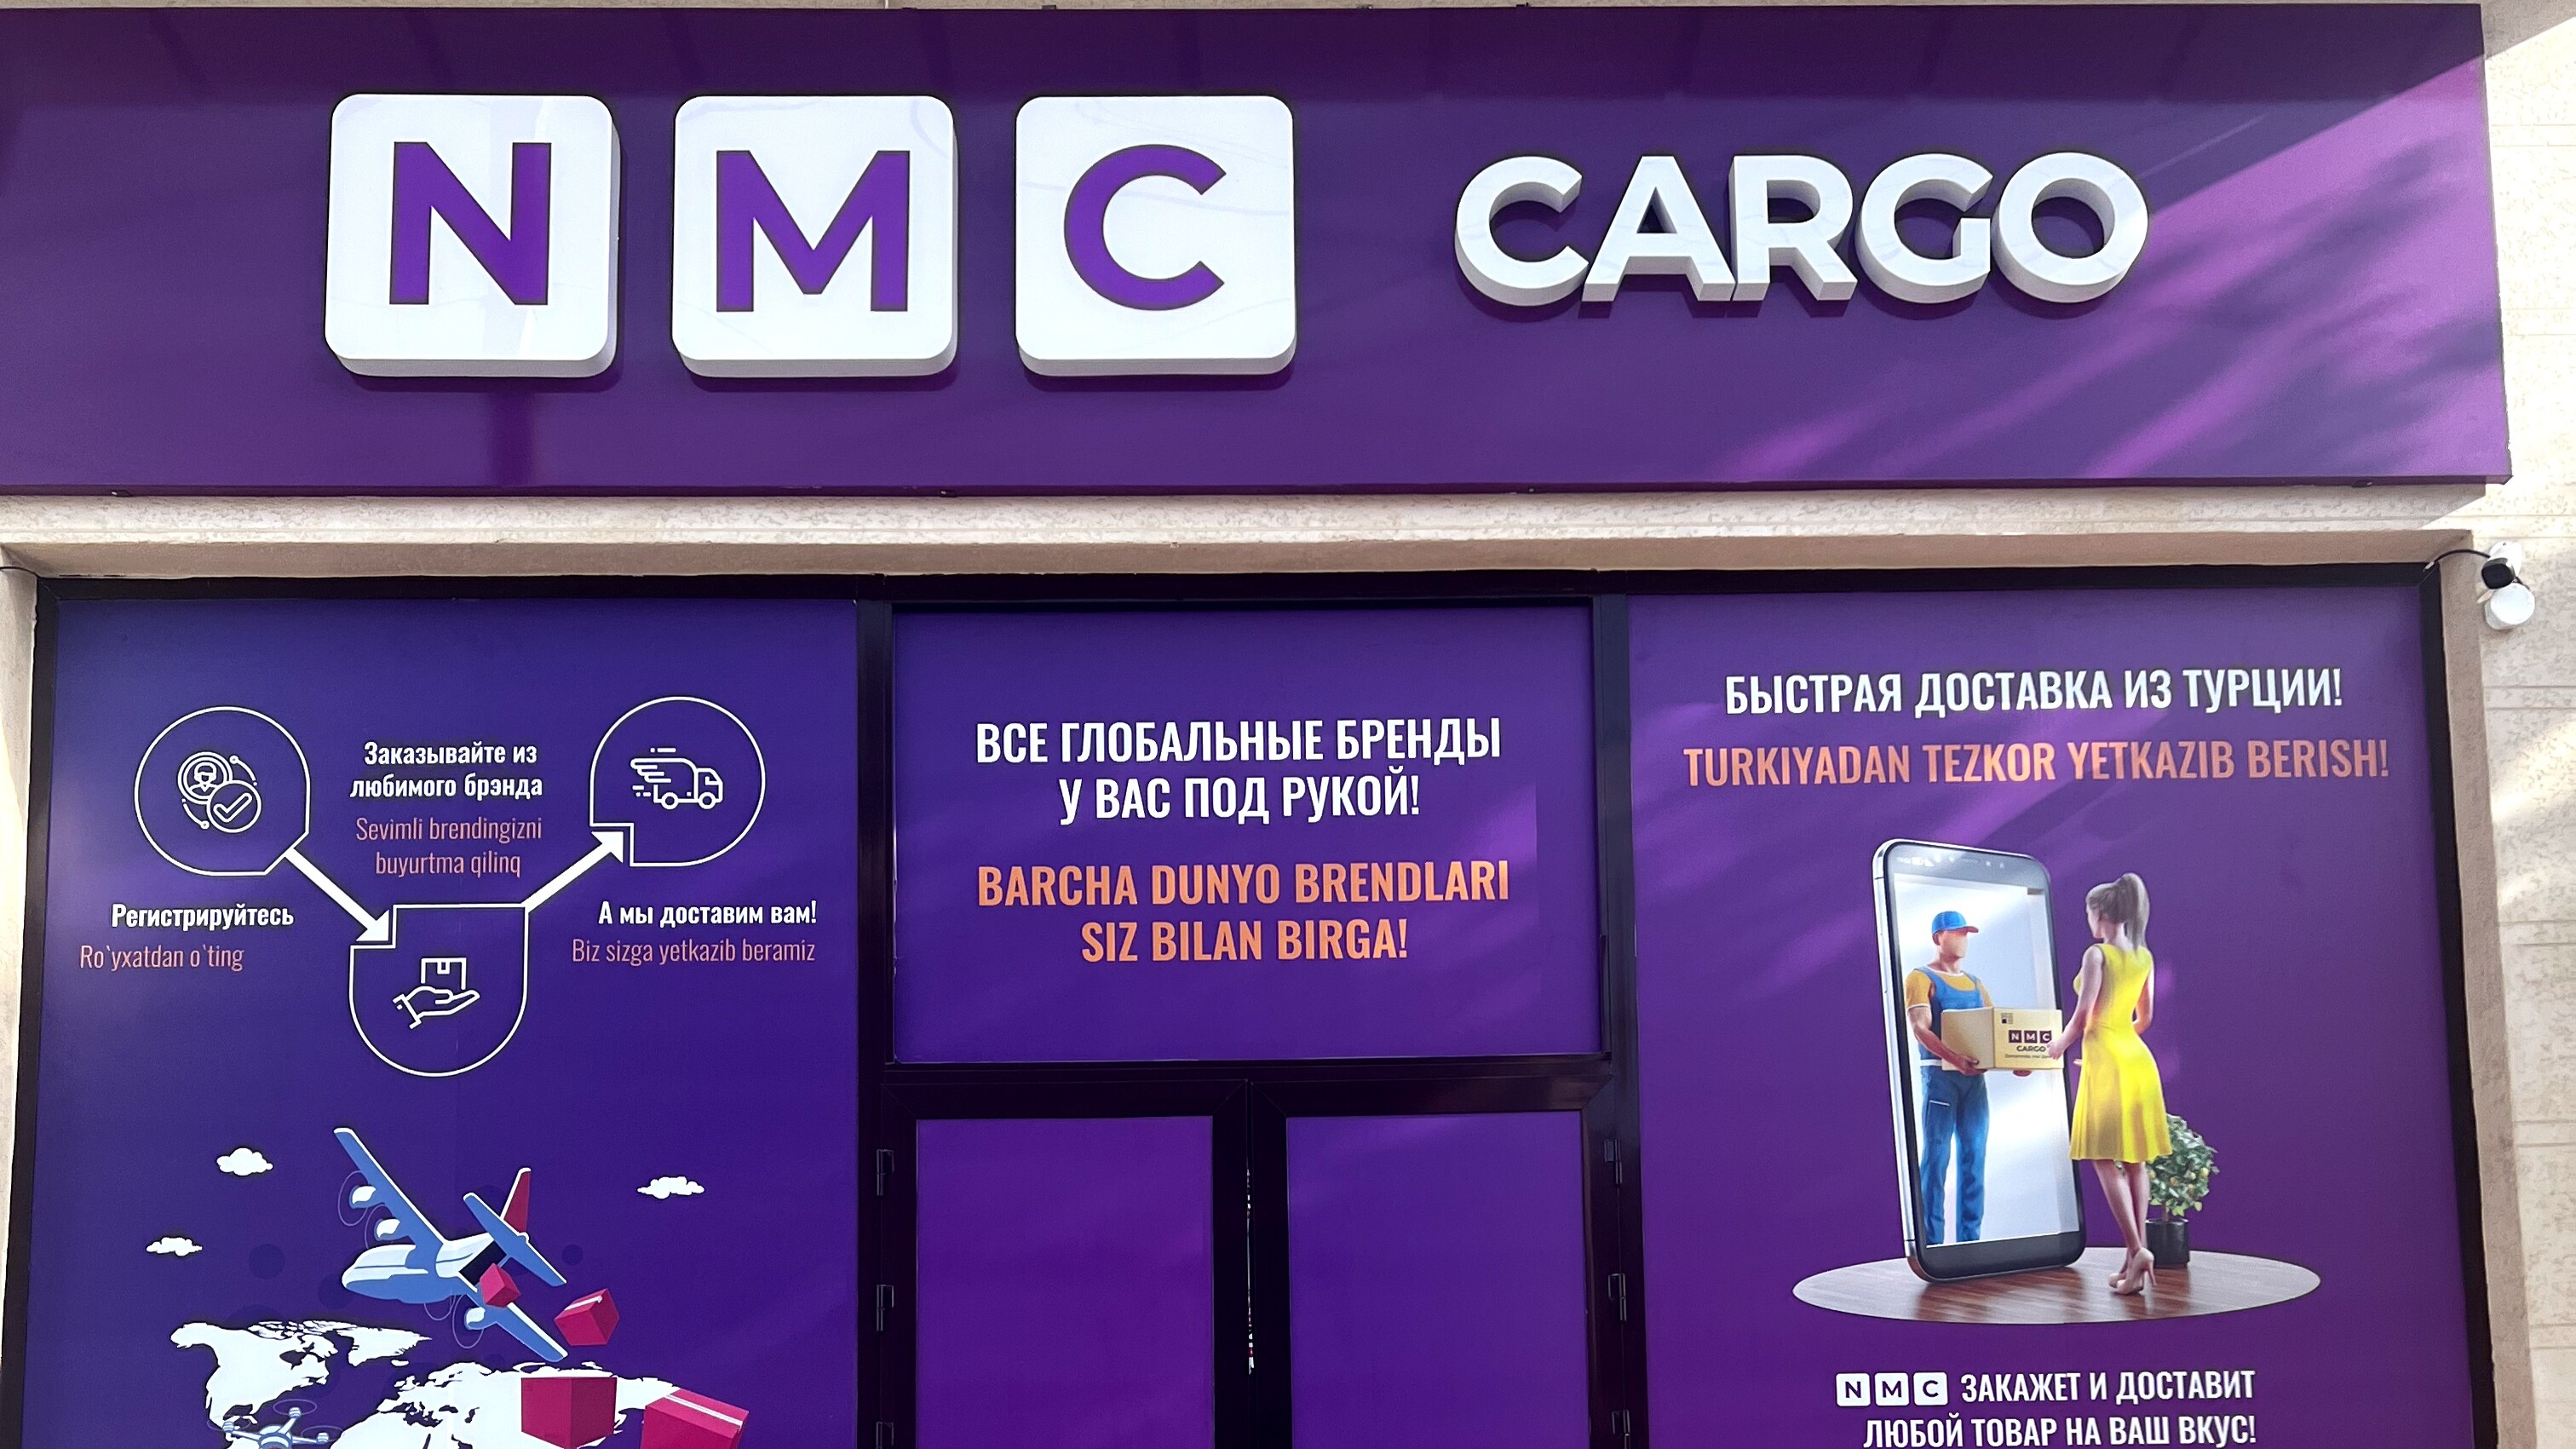 Онлайн-сервис NMC Cargo предлагает доставку товаров из Турции в Узбекистан без комиссии